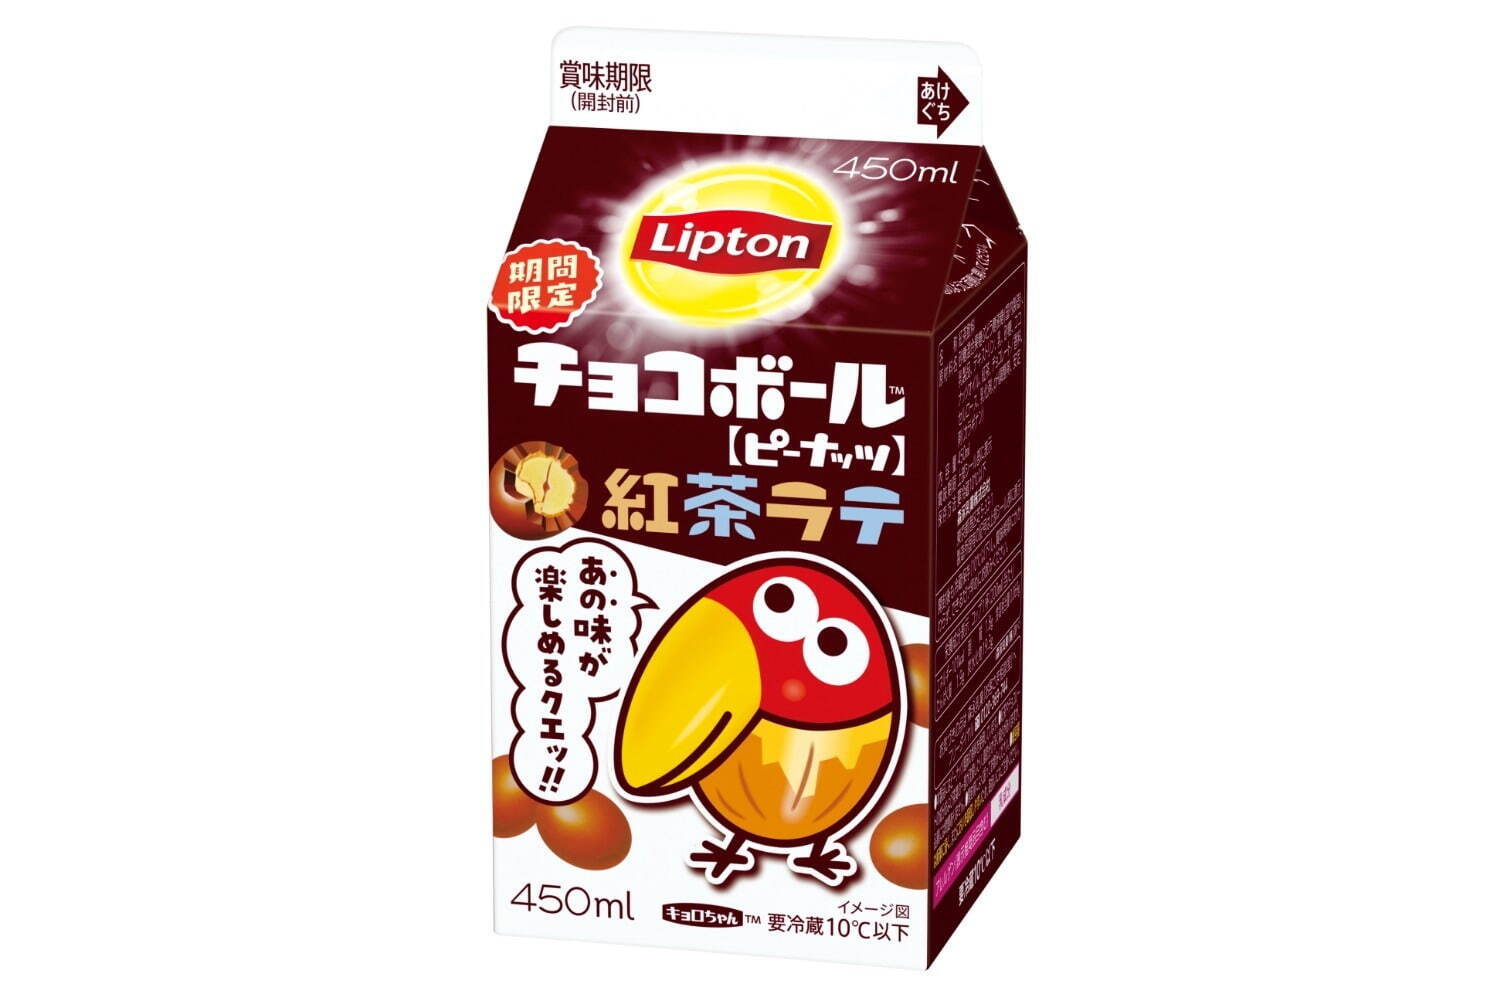 「リプトン チョコボール紅茶ラテ」168円